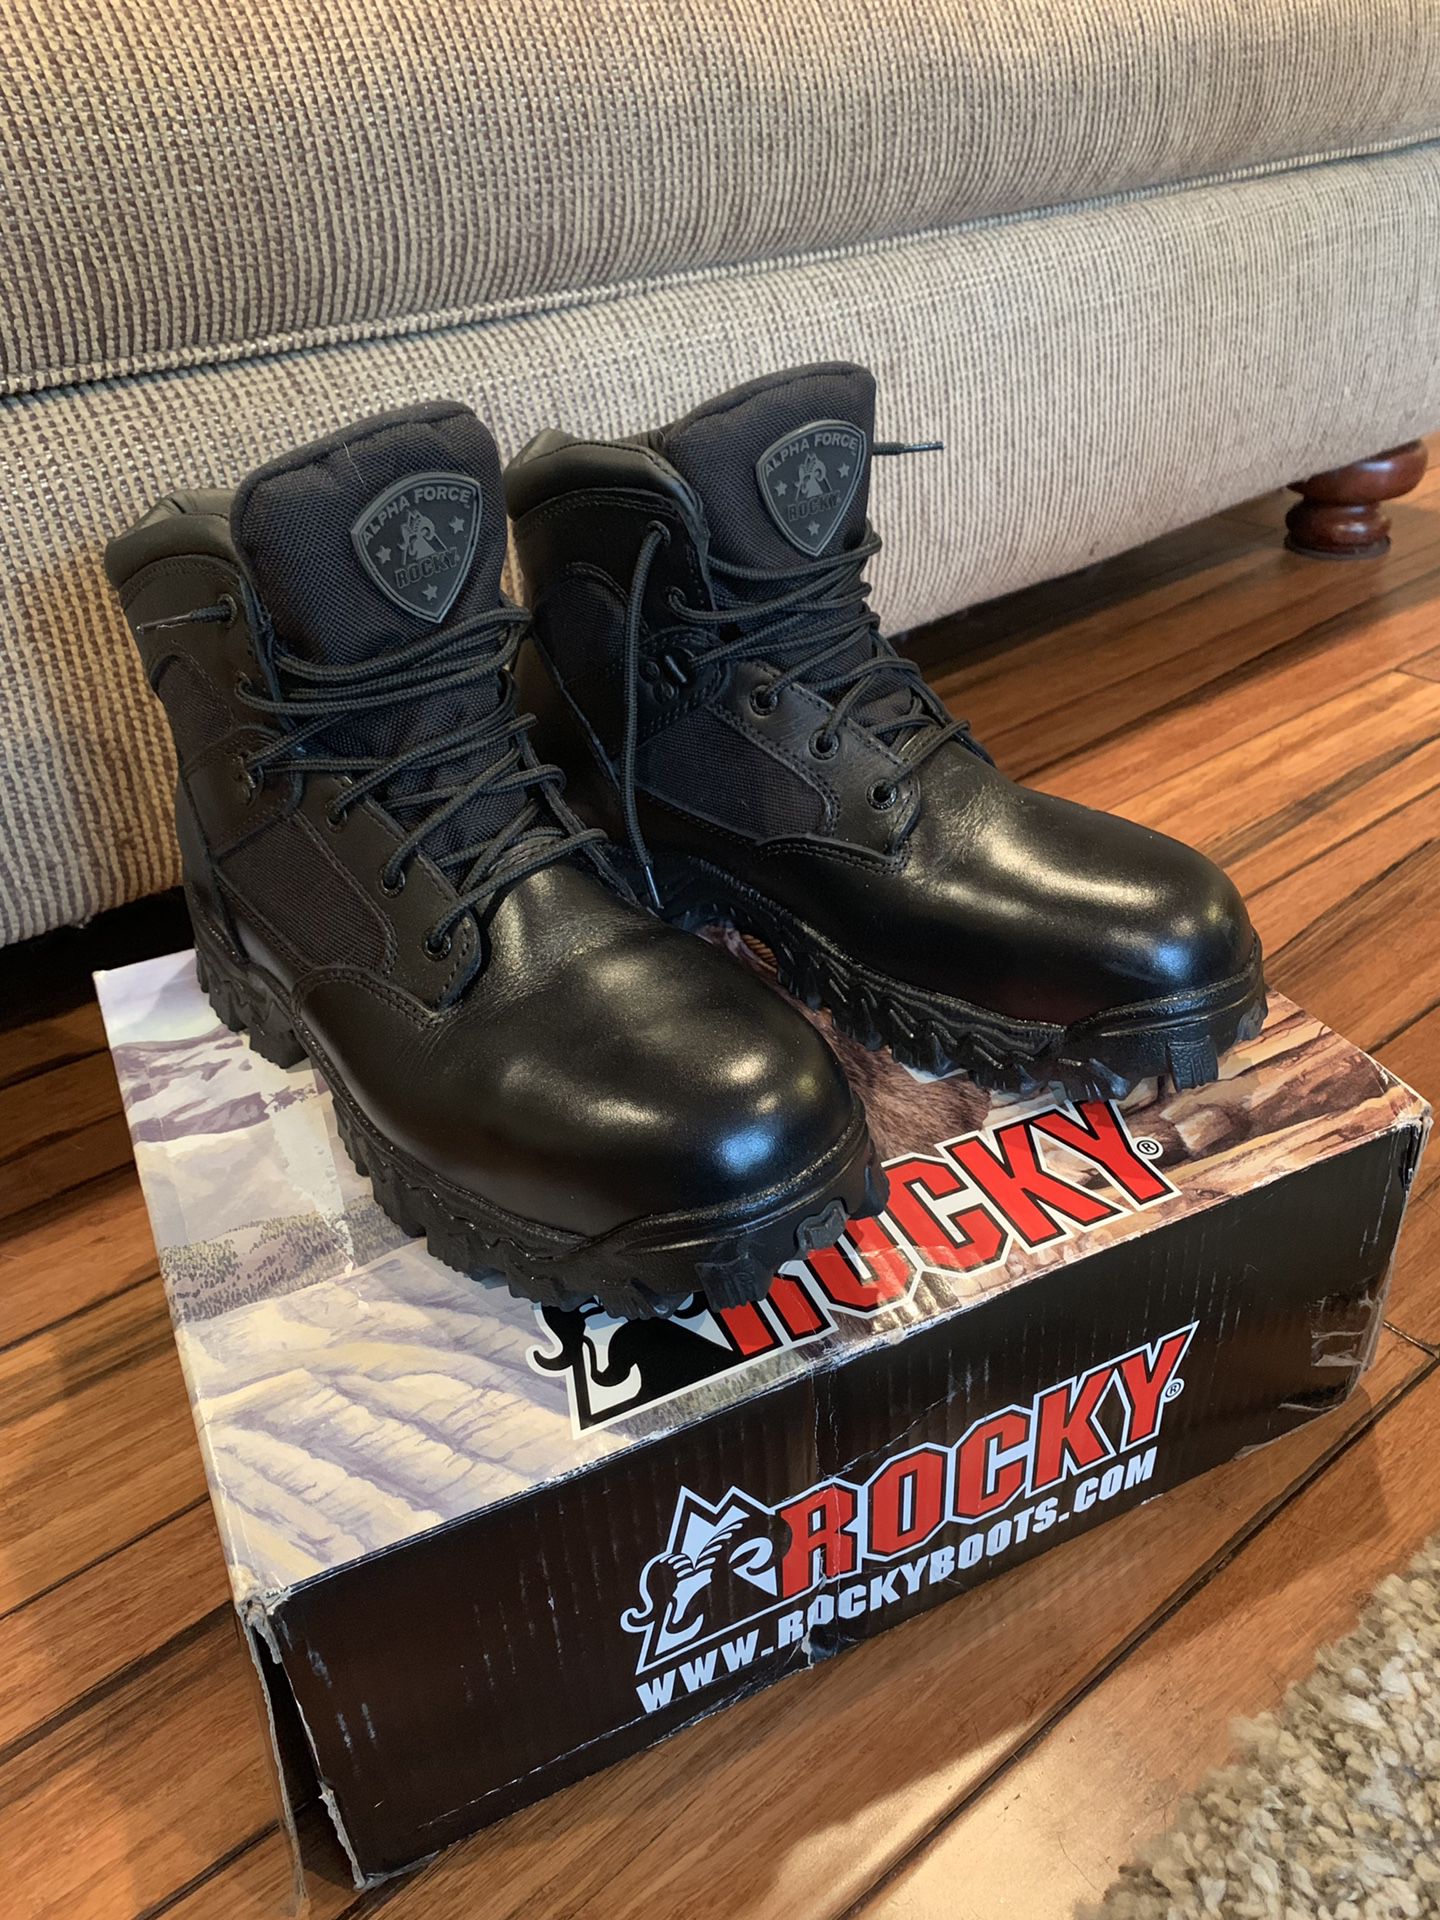 Work boots - Rocky 6” AlphaForce - 10.5M